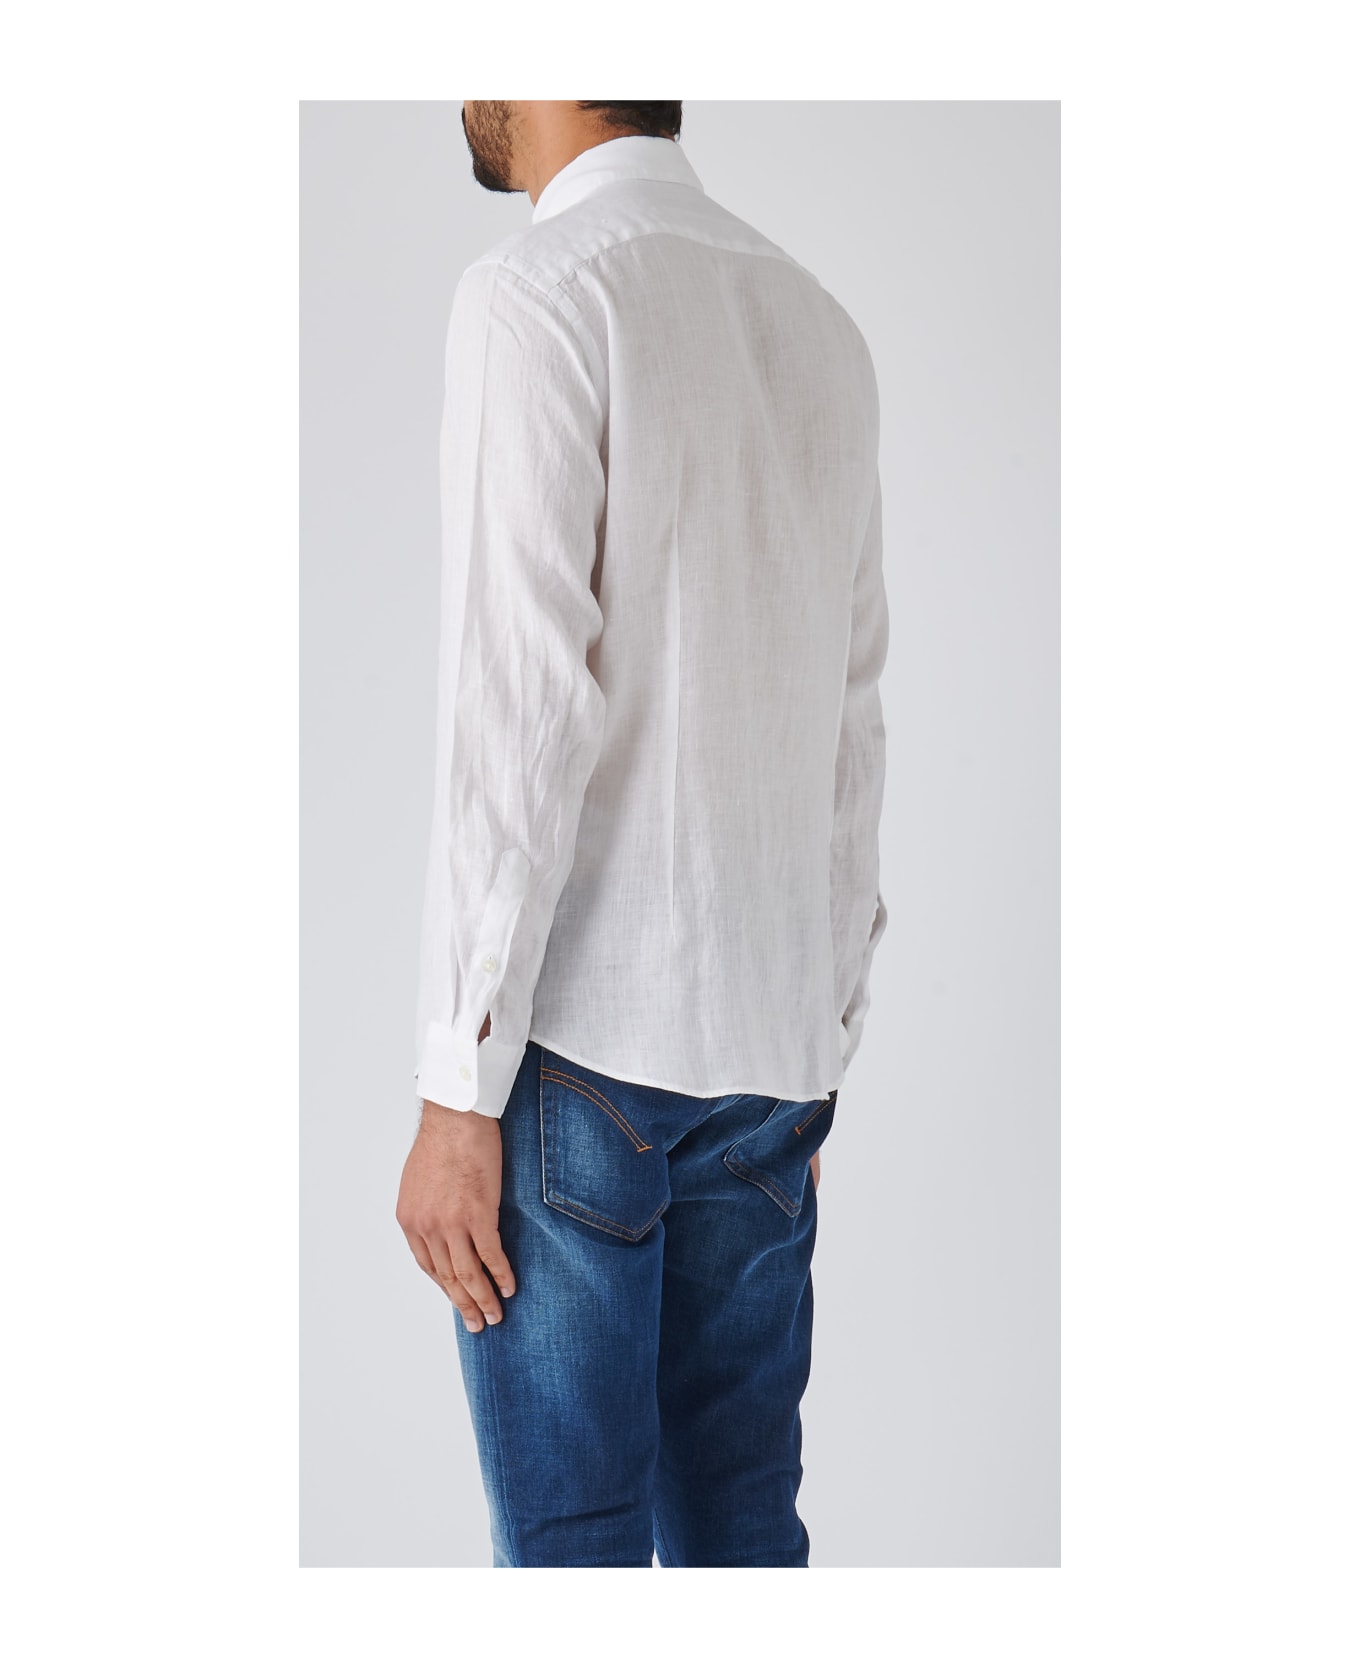 Altea Camicia Uomo Shirt - BIANCO シャツ